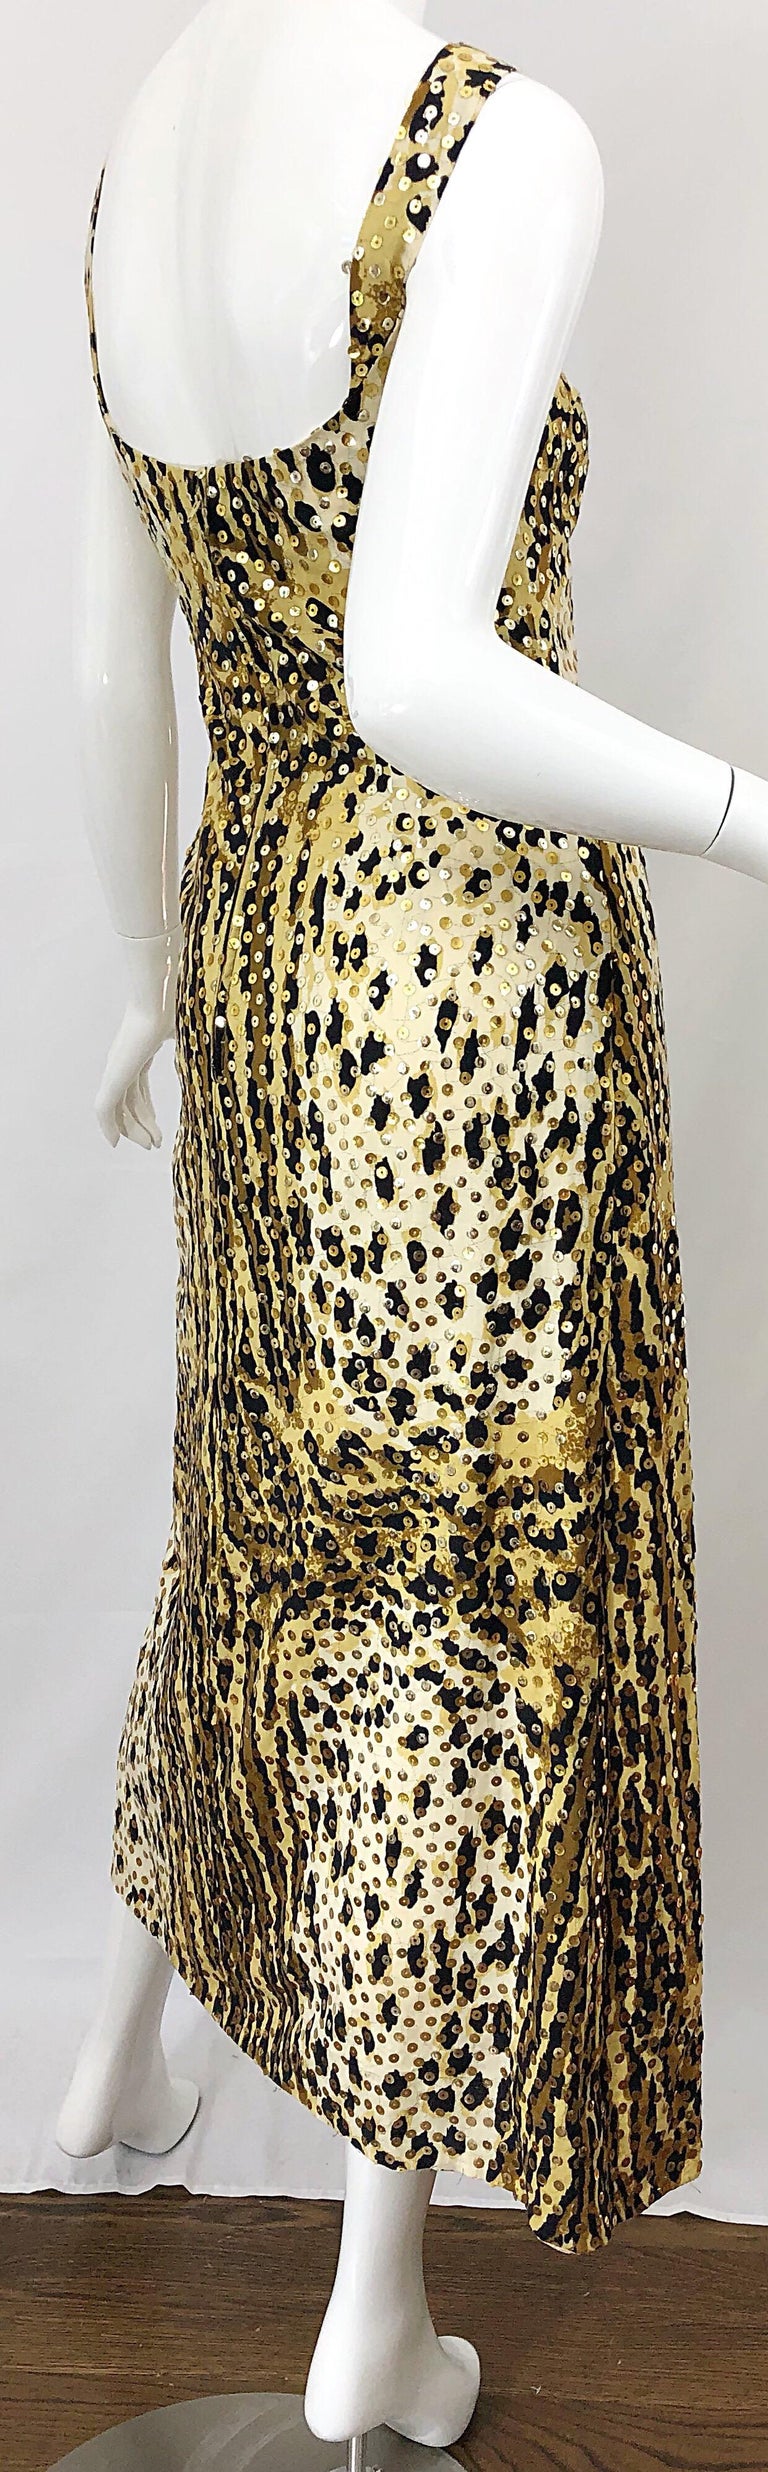 Mollie Parnis 1970s Leopard Cheetah Print Sequined Vintage 70s Cotton Midi Dress For Sale 2